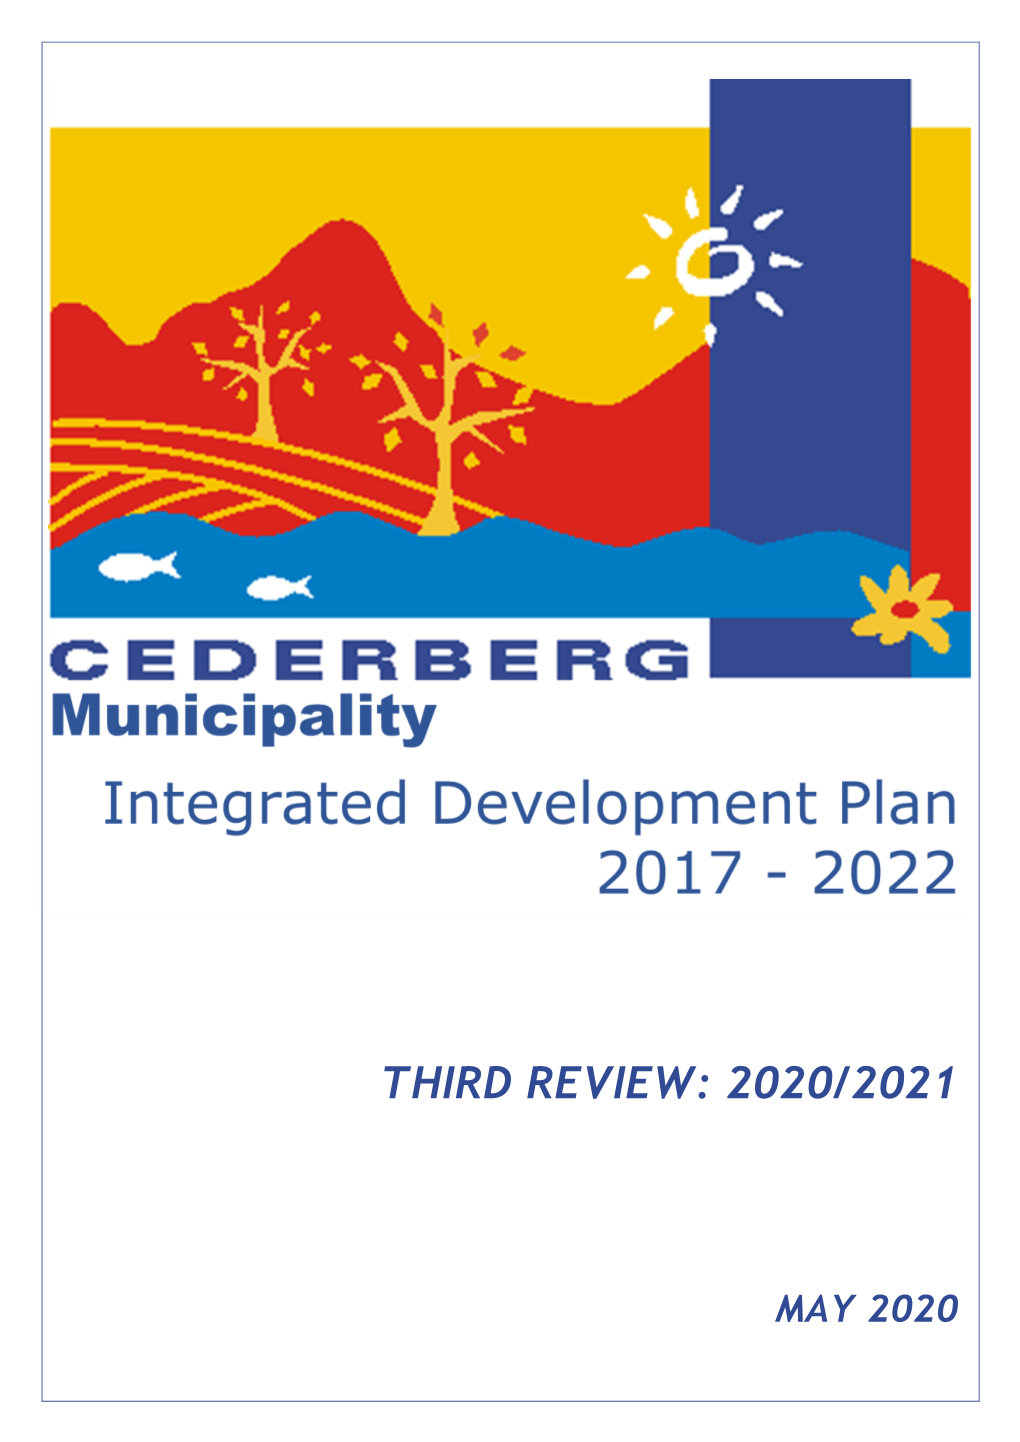 Cederberg-IDP May 2020 – Review 2020-2021